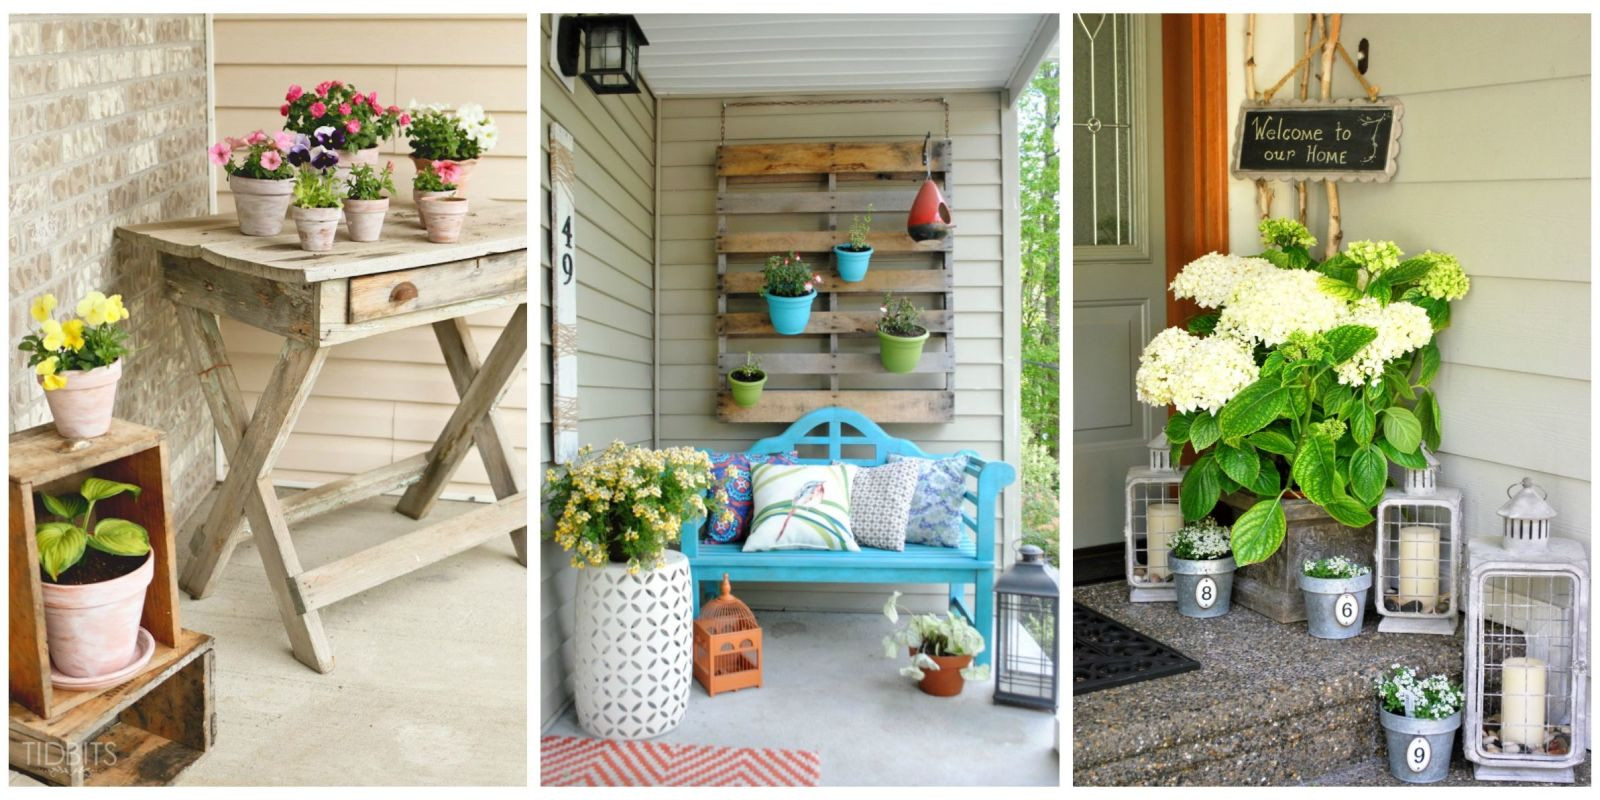 Best ideas about DIY Outdoor Decor
. Save or Pin DIY Porch Décor DIY Outdoor Décor Now.